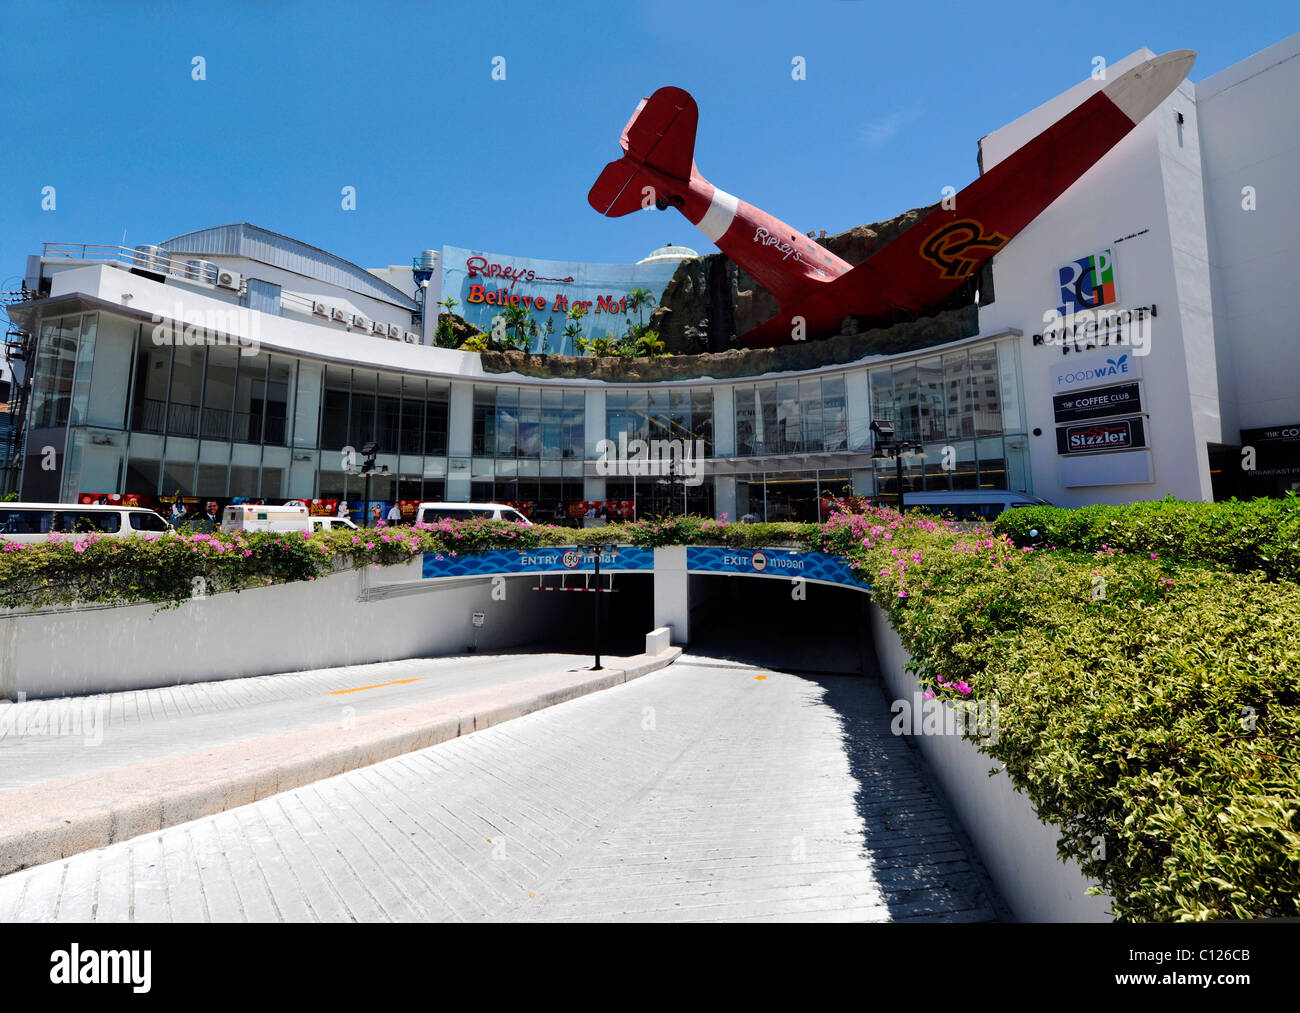 Royal Garden shopping center, aircraft on the facade, Thailand, Asia Stock Photo